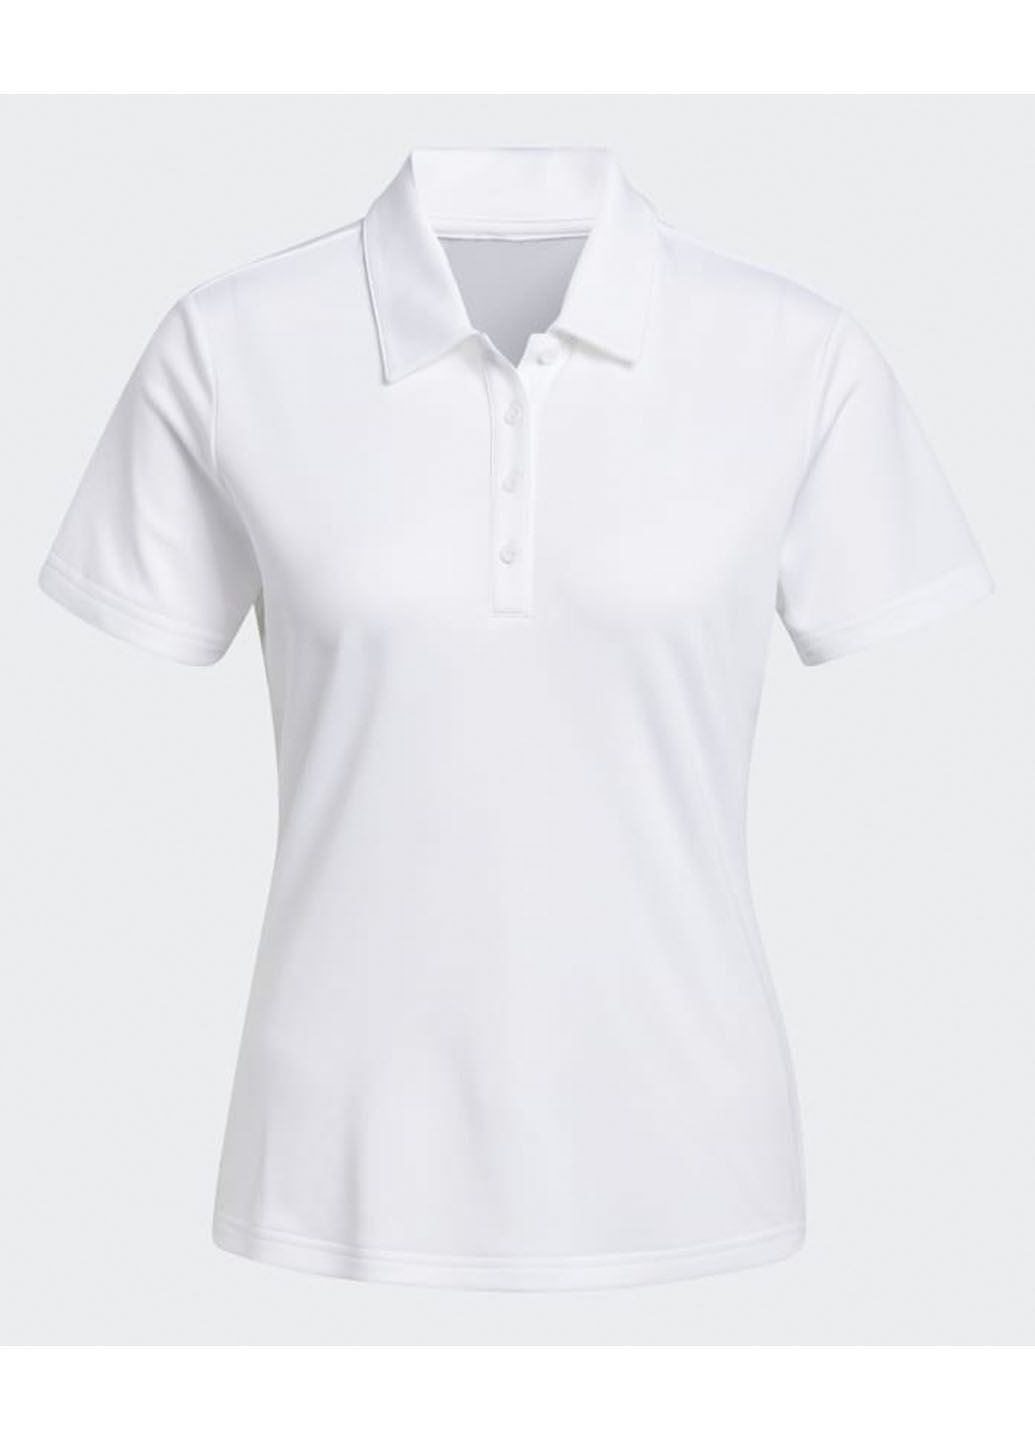 Белая женская футболка-спортивное поло performance primegreen golf polo shirt gt7926 adidas с логотипом